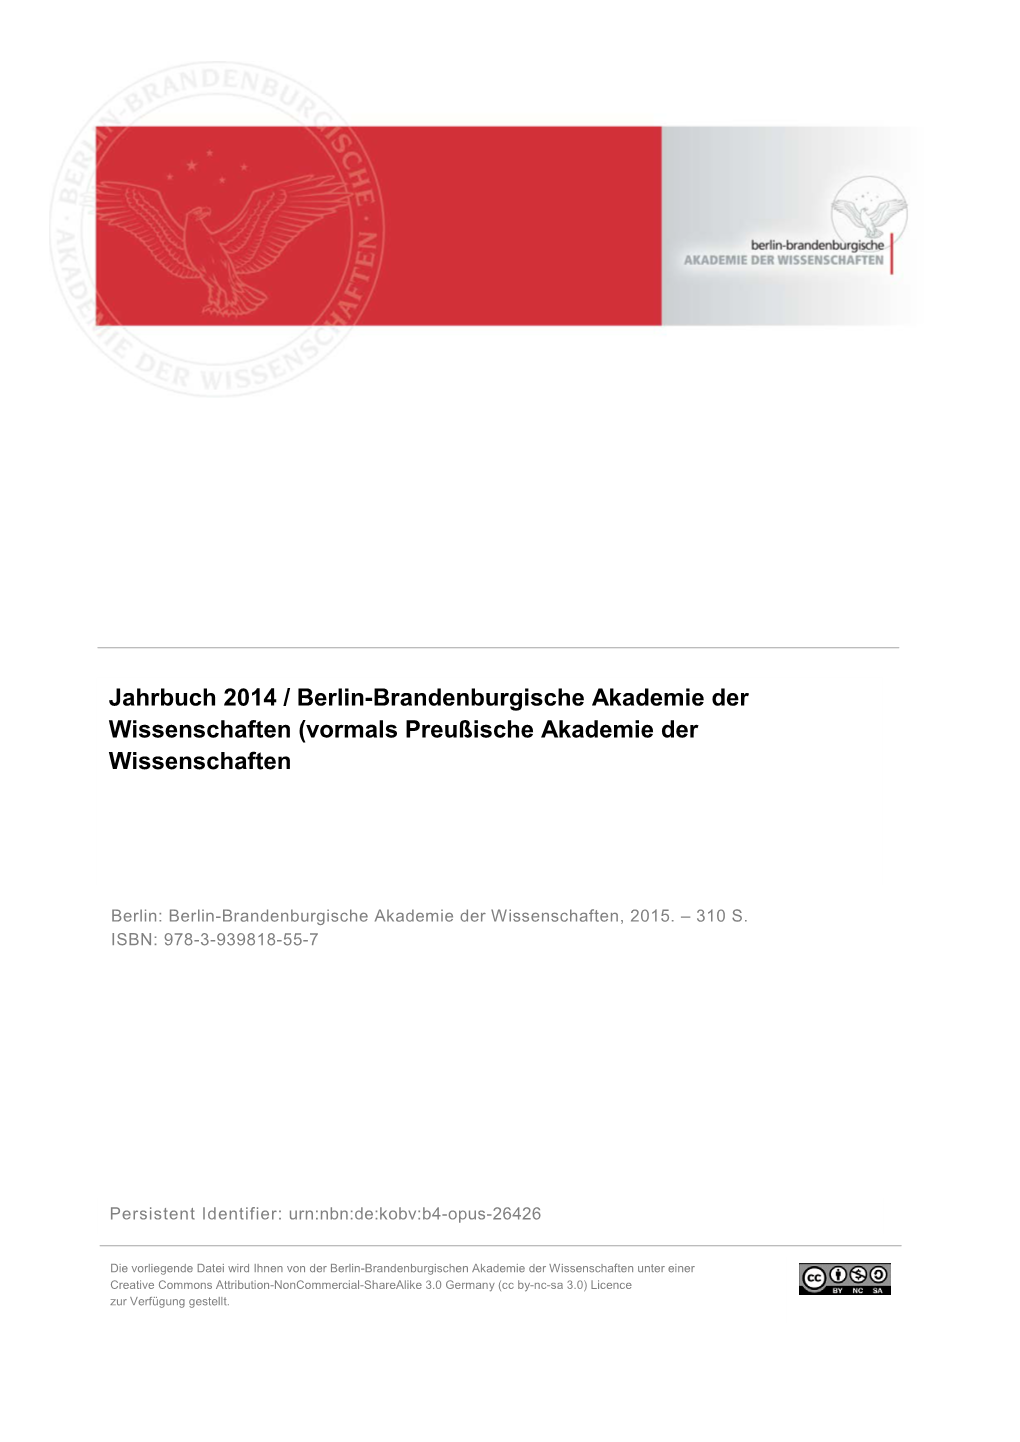 Jahrbuch 2014 / Berlin-Brandenburgische Akademie Der Wissenschaften (Vormals Preußische Akademie Der Wissenschaften